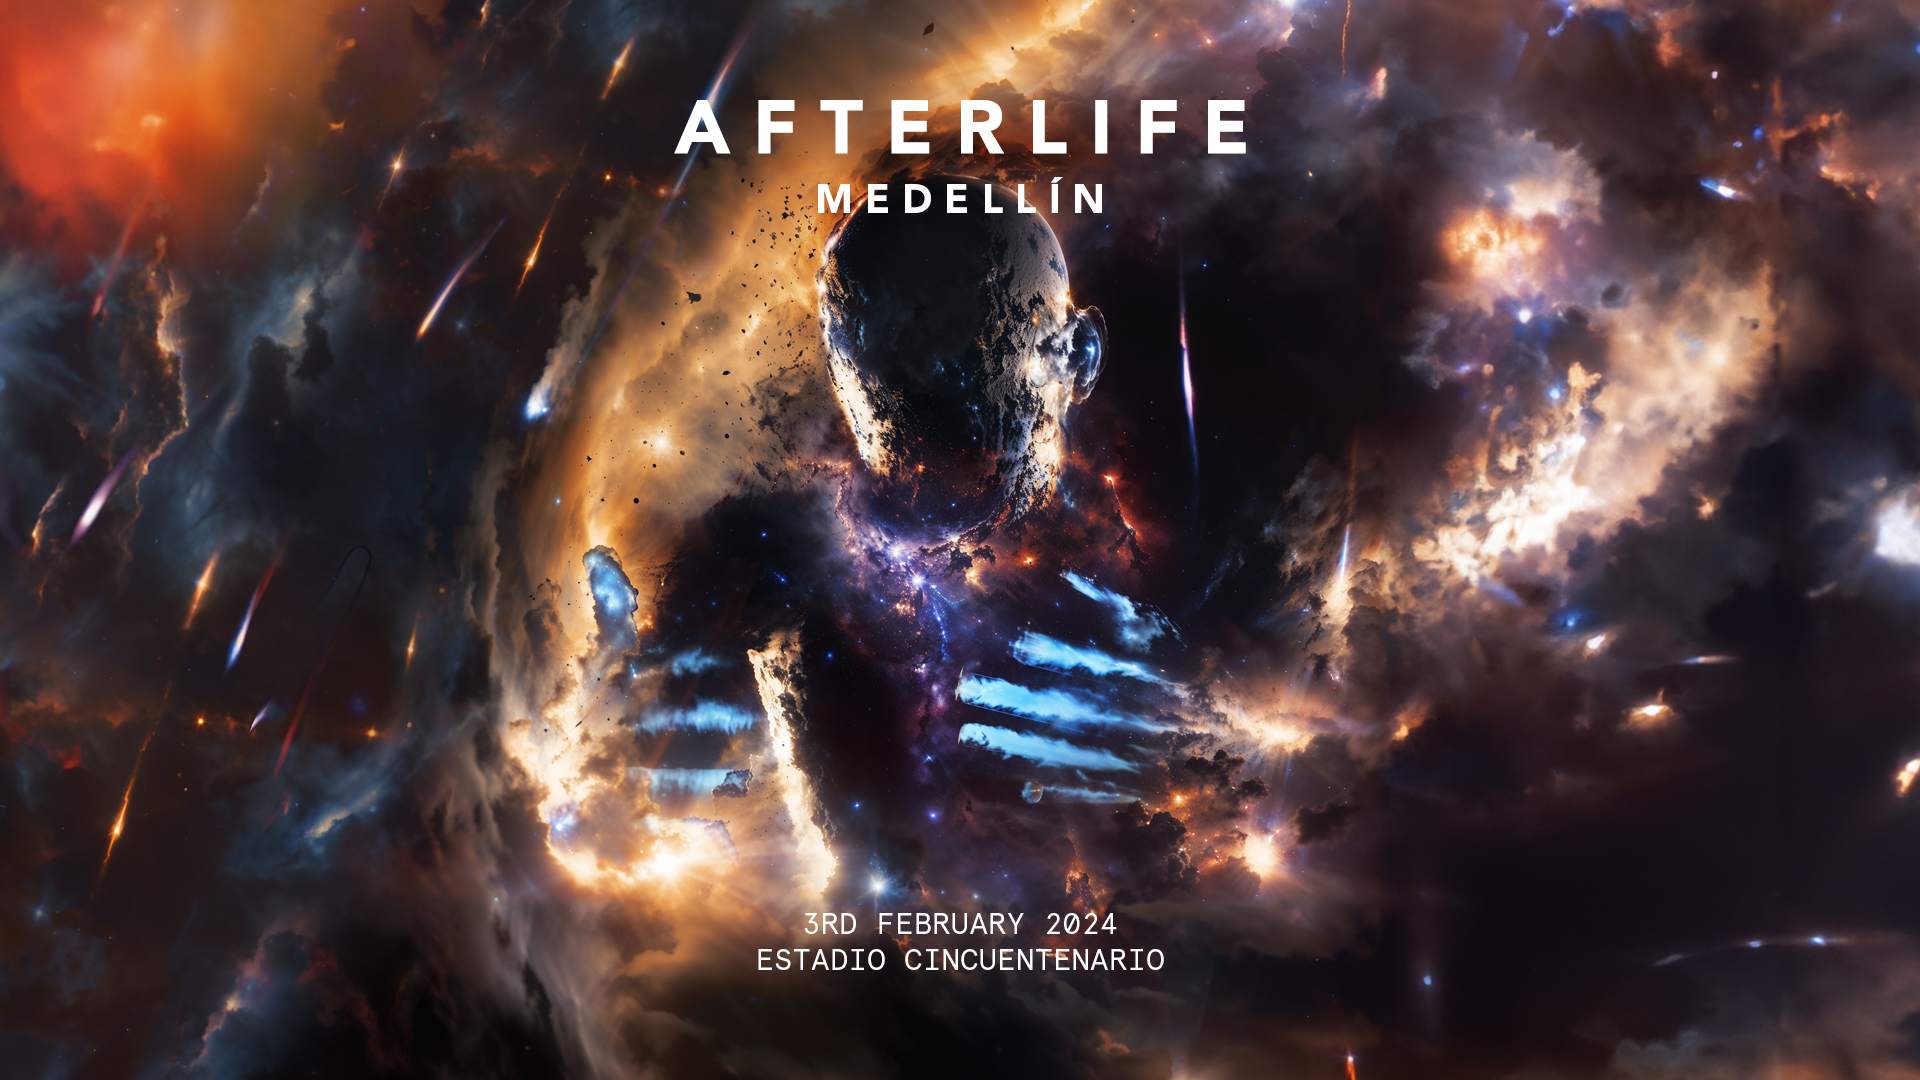 Afterlife Medellín 2024 - フライヤー表